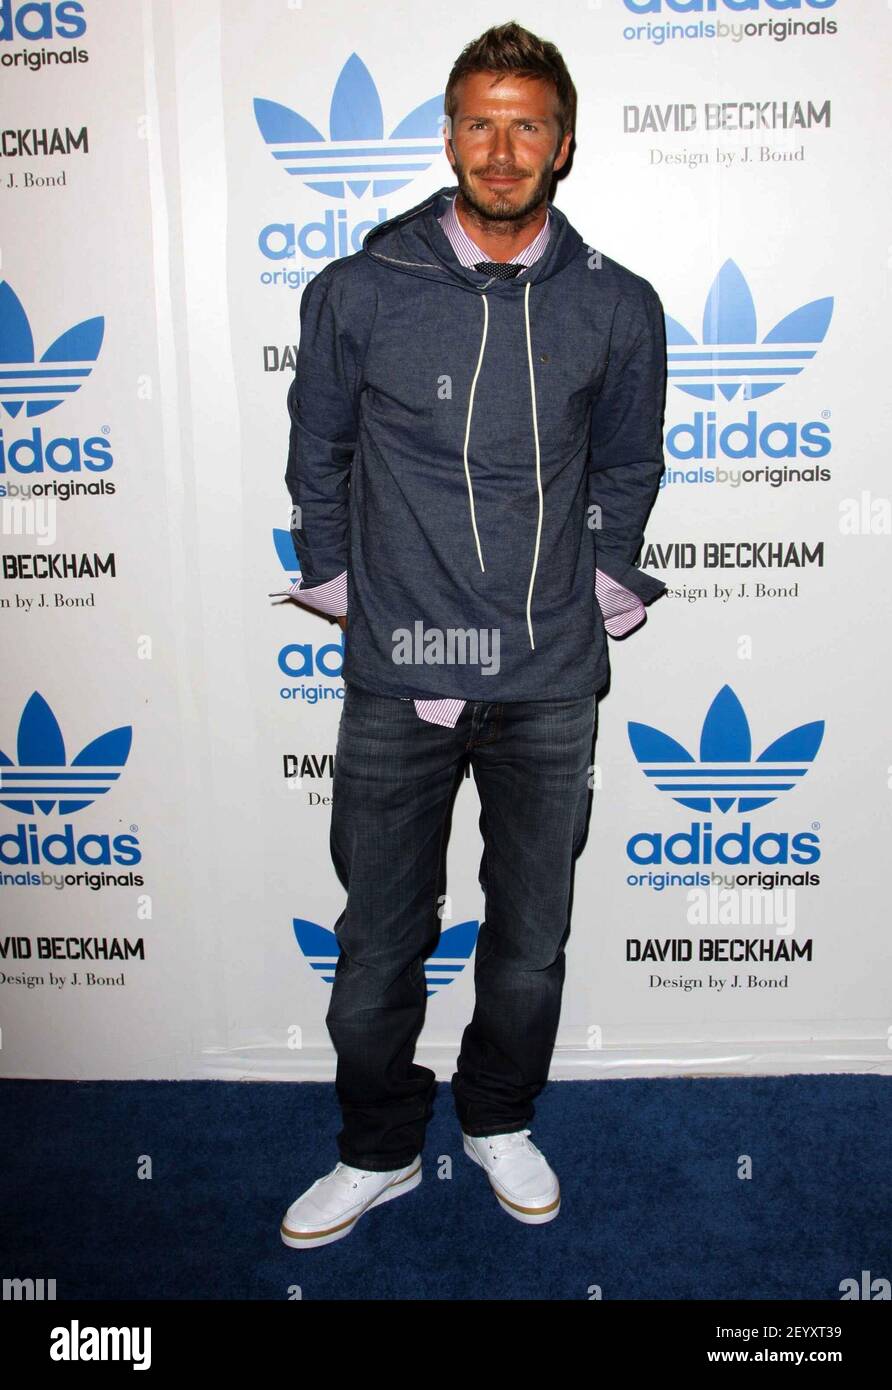 30 Septiembre 2009 - los Angeles, California - David Beckham. David Beckham  y James Bond celebran el lanzamiento de originales Adidas por originales  celebrados en la tienda Adidas. Crédito de la foto: